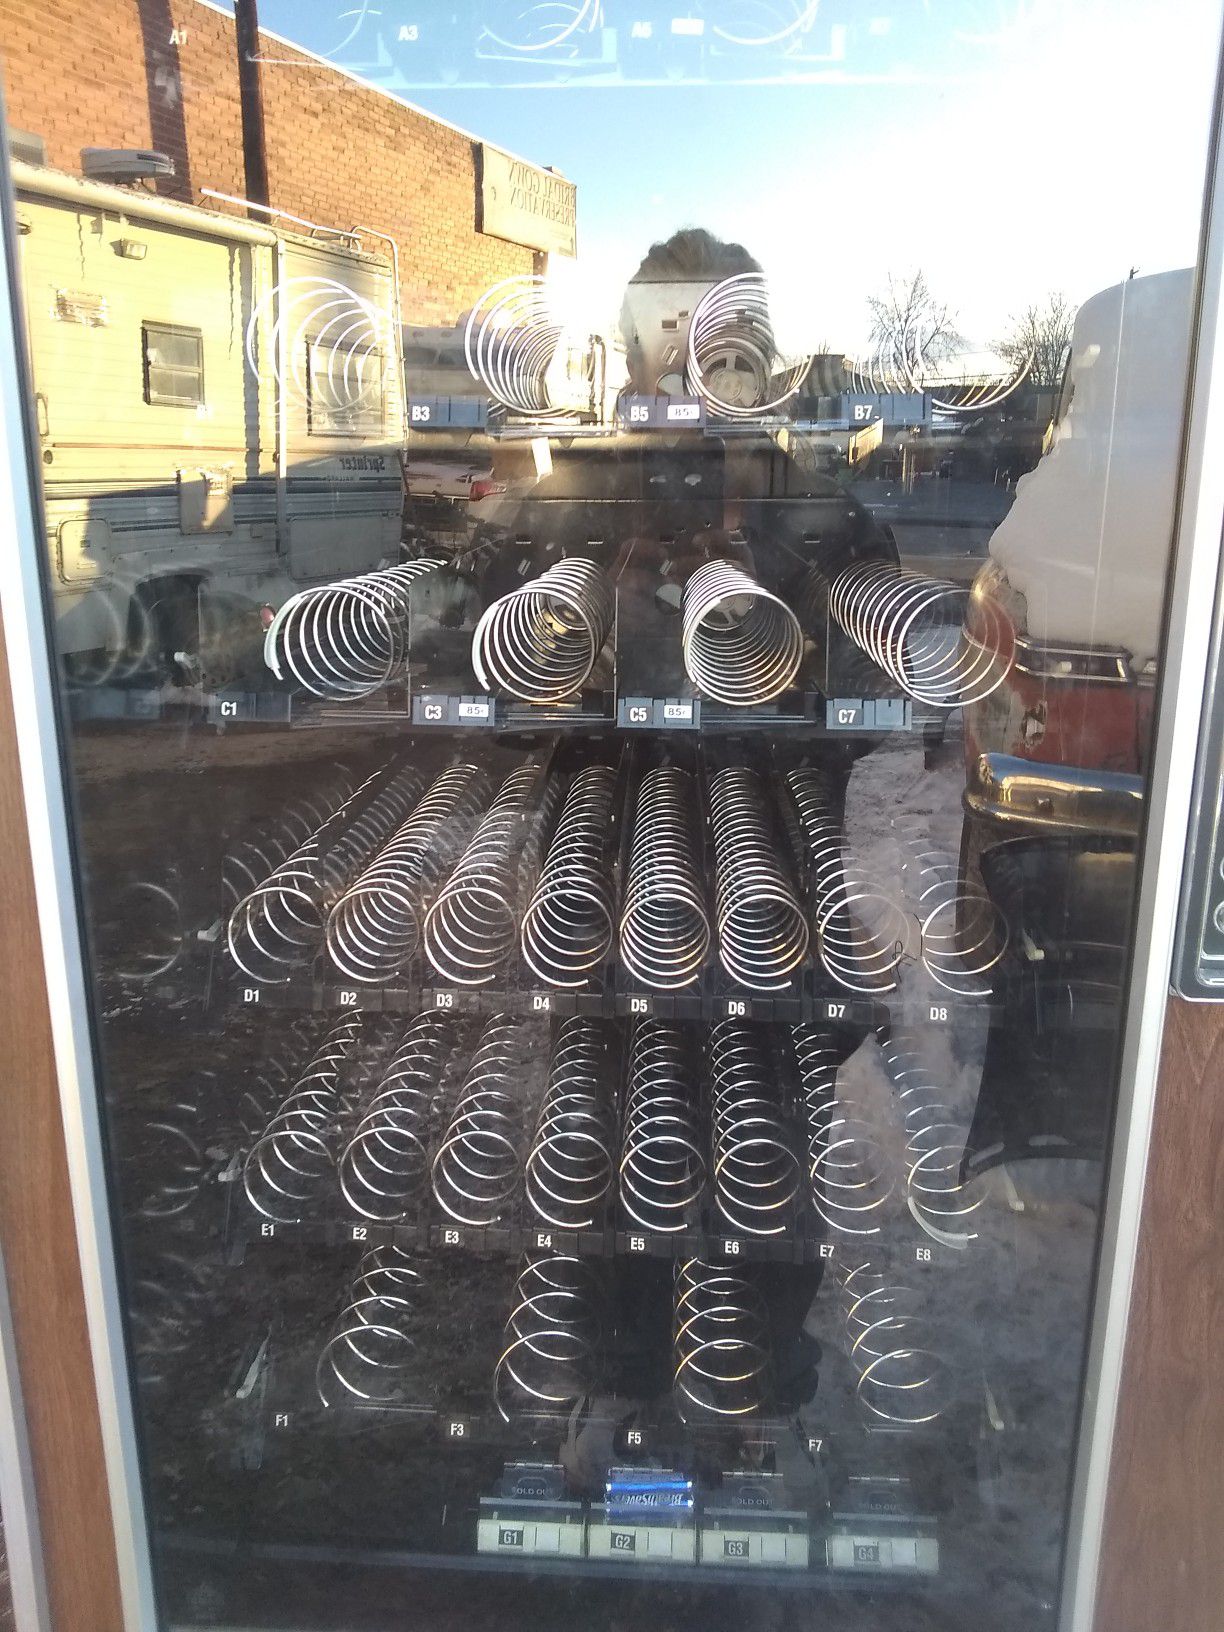 SNACKSHOP AP-111 SPIRAL VENDING SNACK MACHINE for Sale in Denver, CO - OfferUp